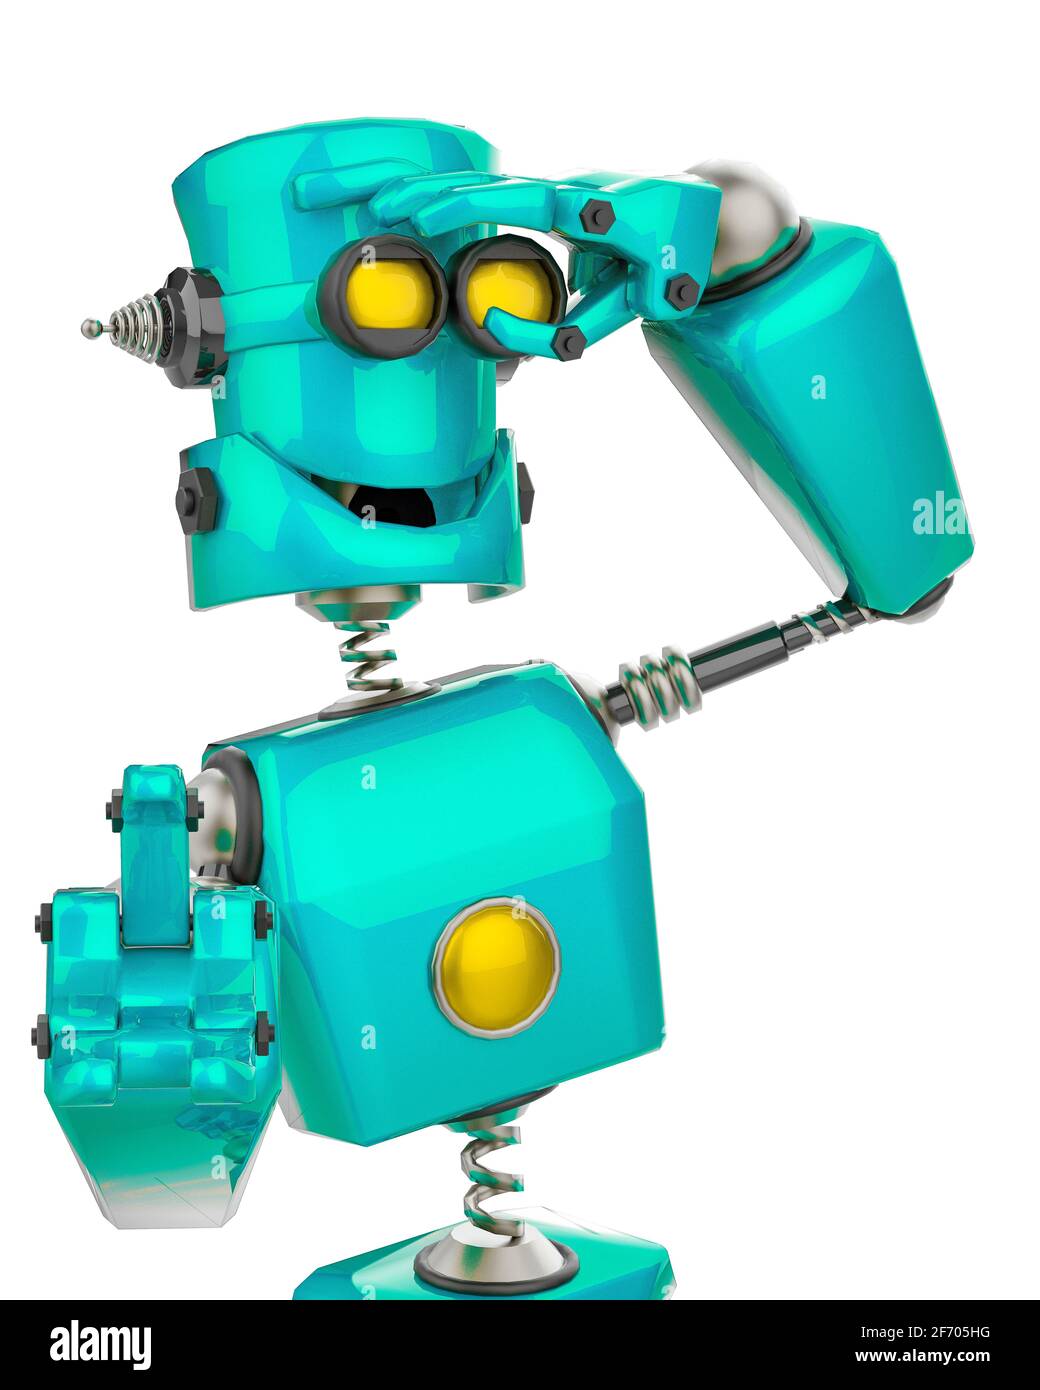 dibujos animados de robots divertidos con fondo blanco, ilustración 3d  Fotografía de stock - Alamy